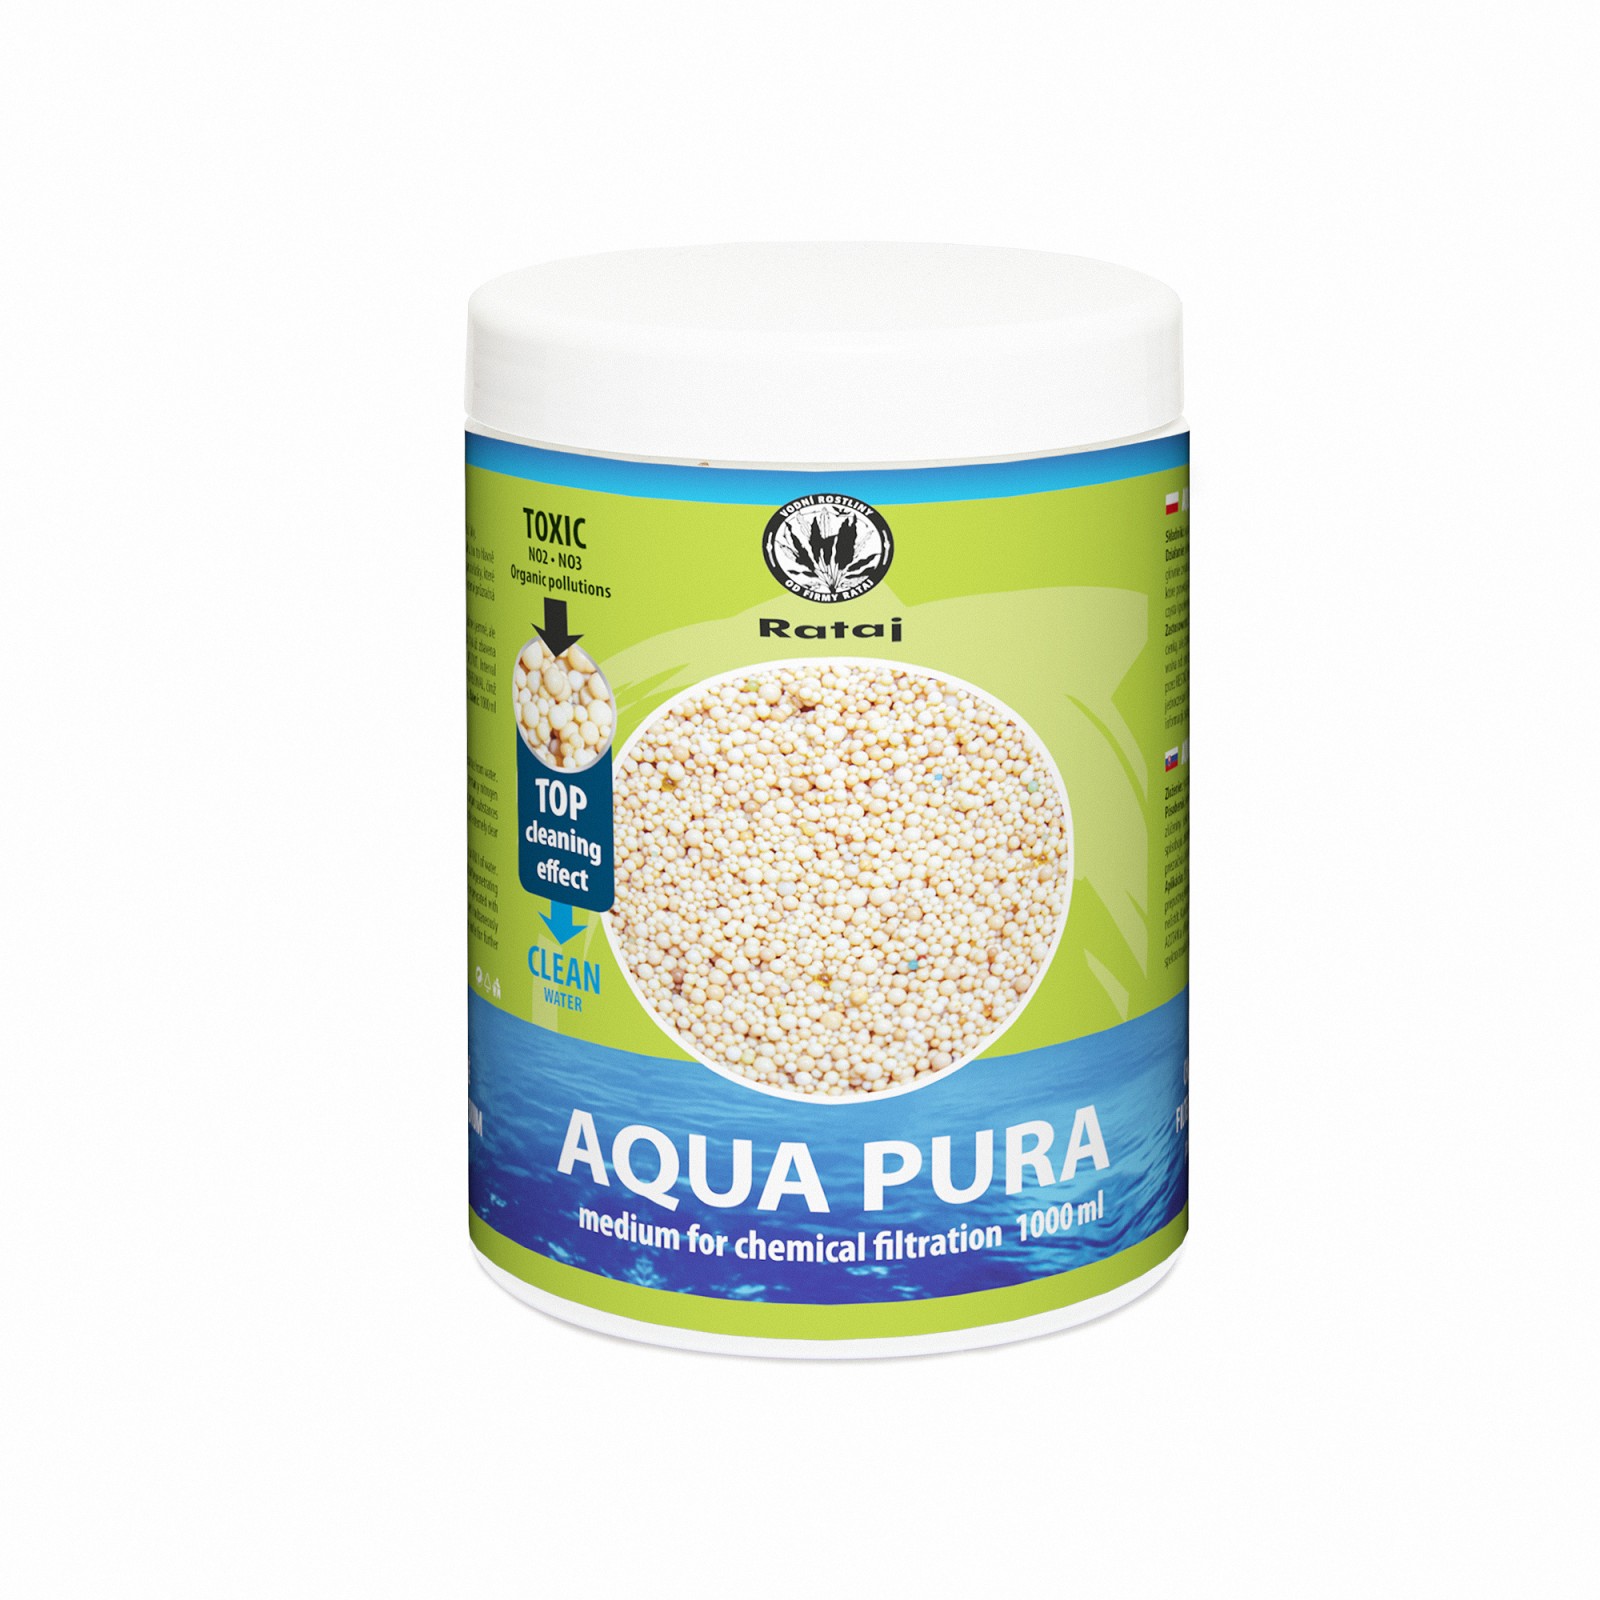 Aqua pura 1000 ml